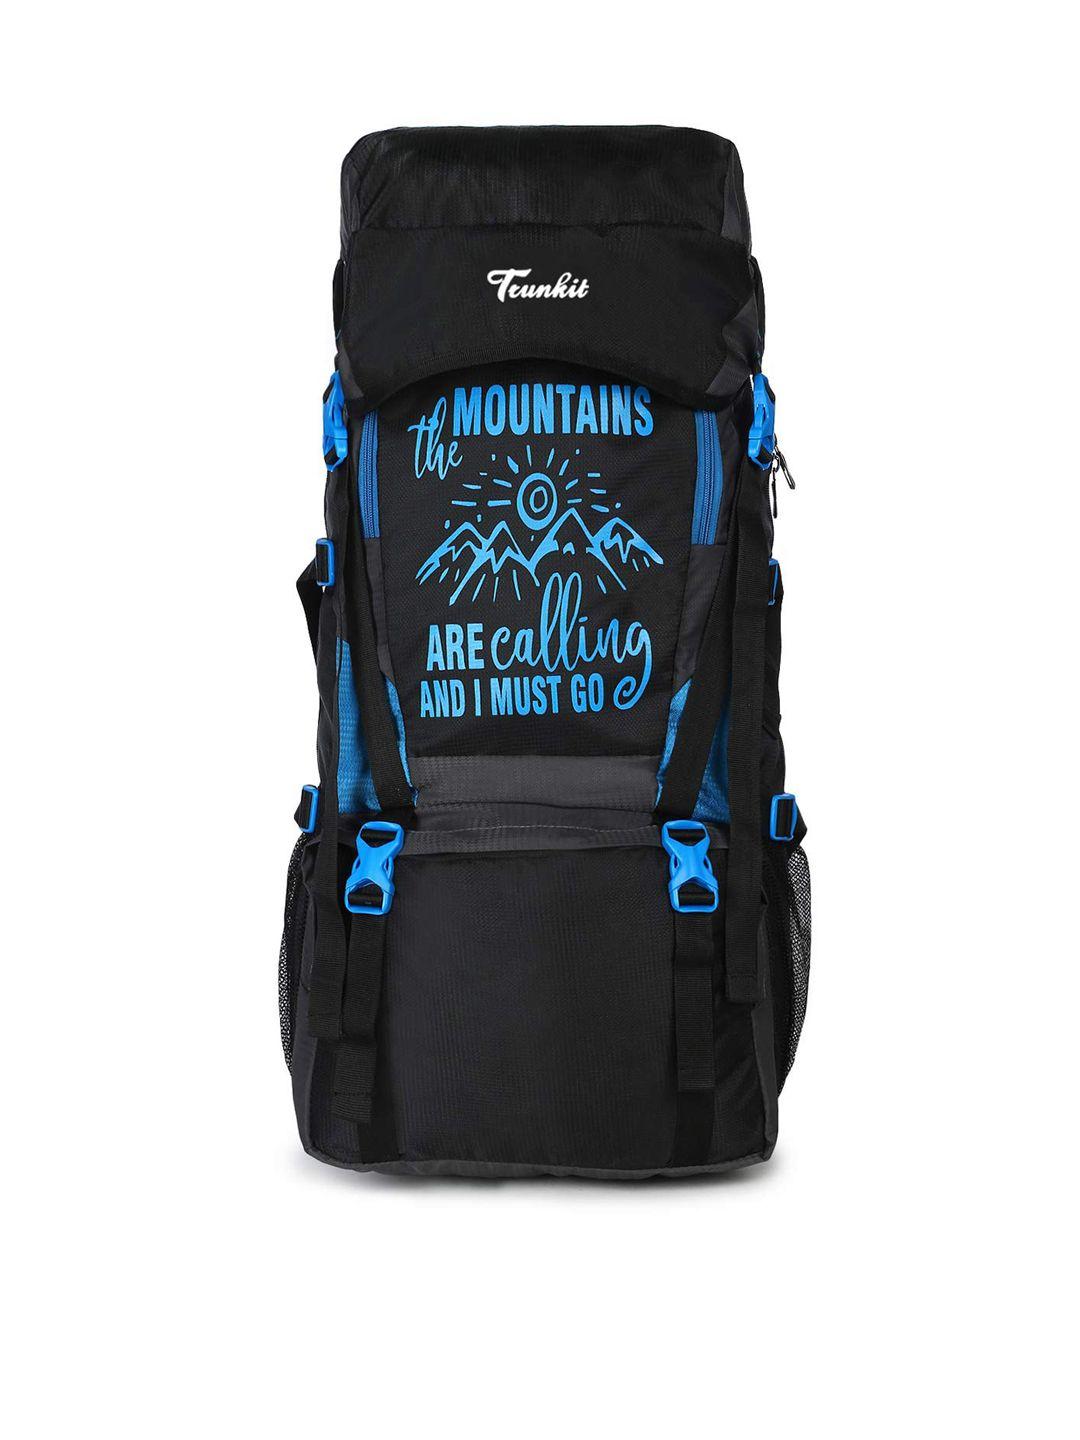 trunkit blue & black printed waterproof travelling trekking hiking camping bag backpack series mt calling rucksack